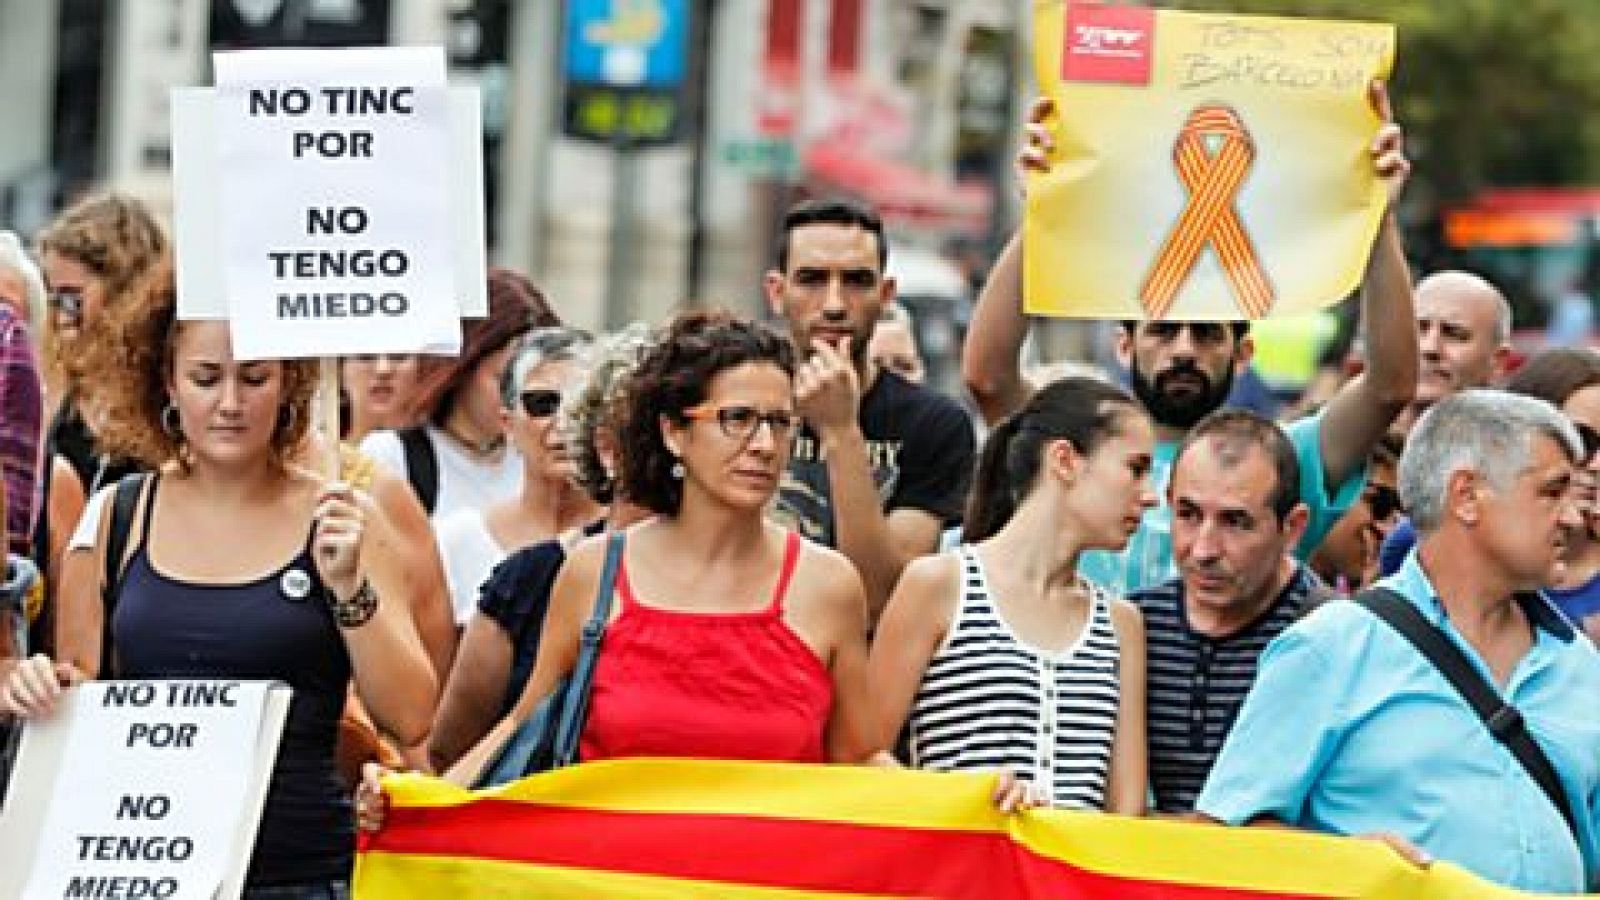 L'informatiu - Comunitat Valenciana: La Comunidad Valenciana en 2' - 28/08/17 | RTVE Play